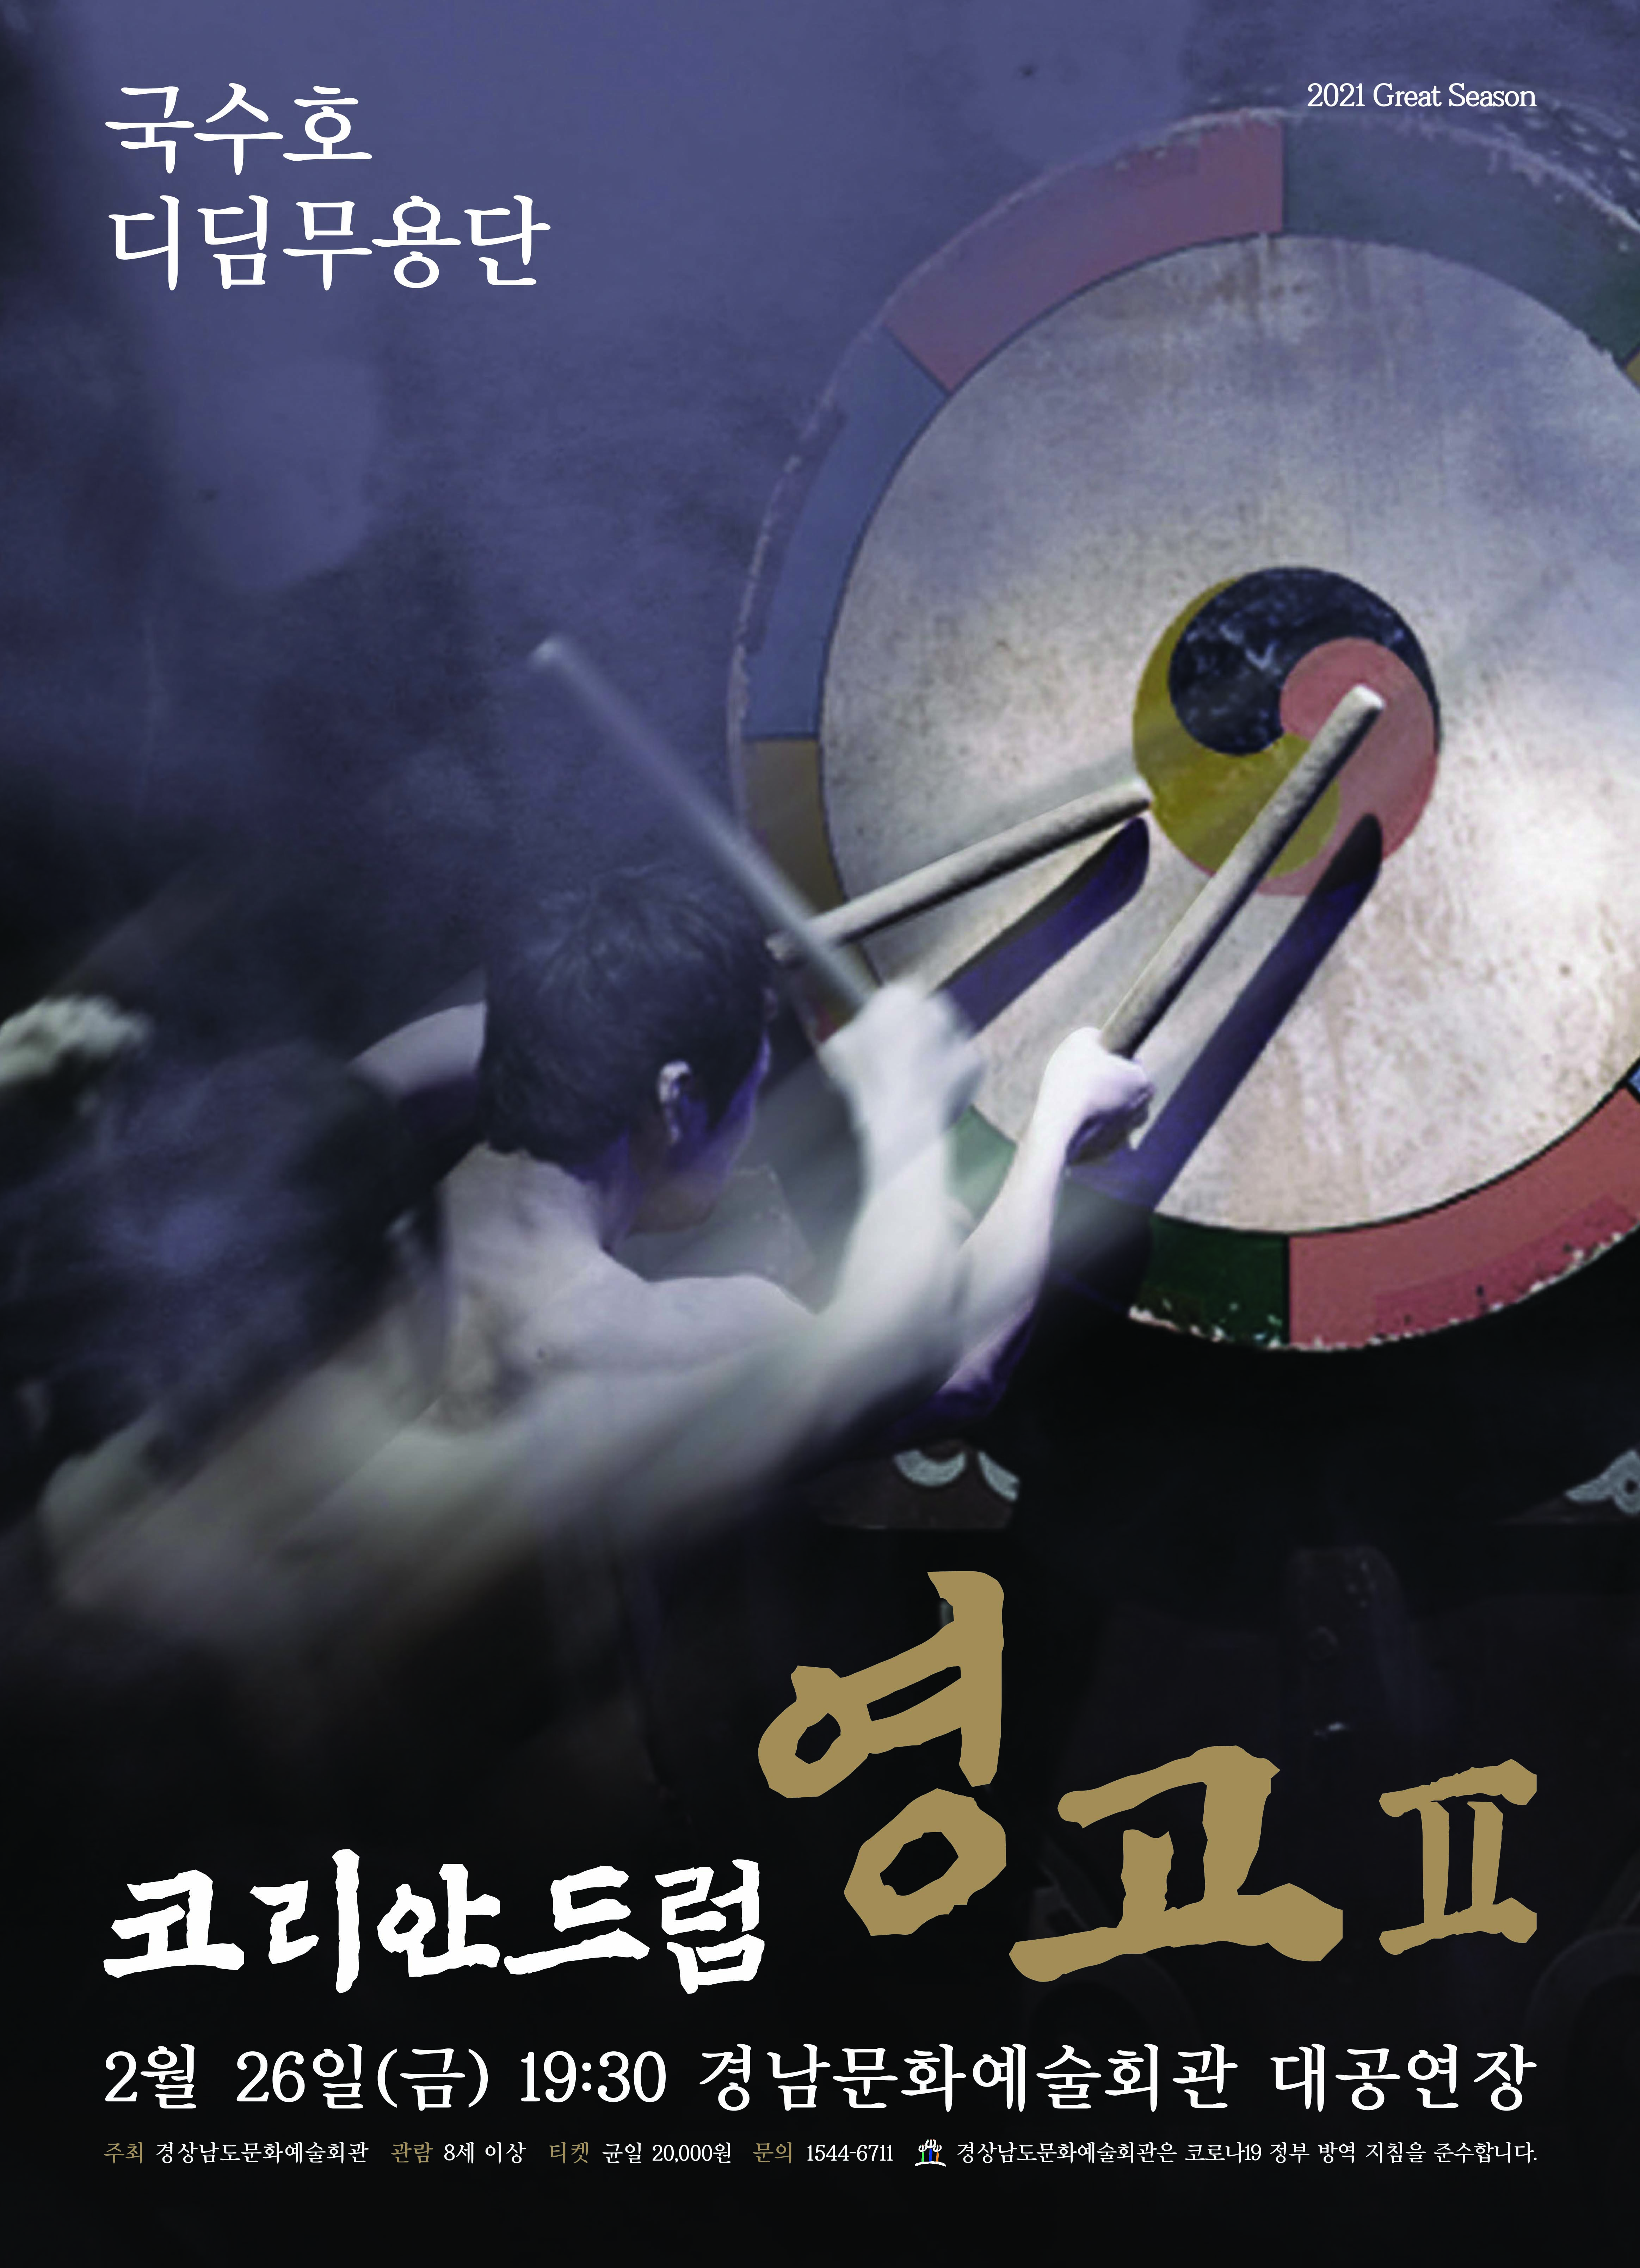 (경남문화예술회관보도자료,210222)국수호디딤무용단'코리안드럼영고Ⅱ'포스터_경남문화예술회관.jpg